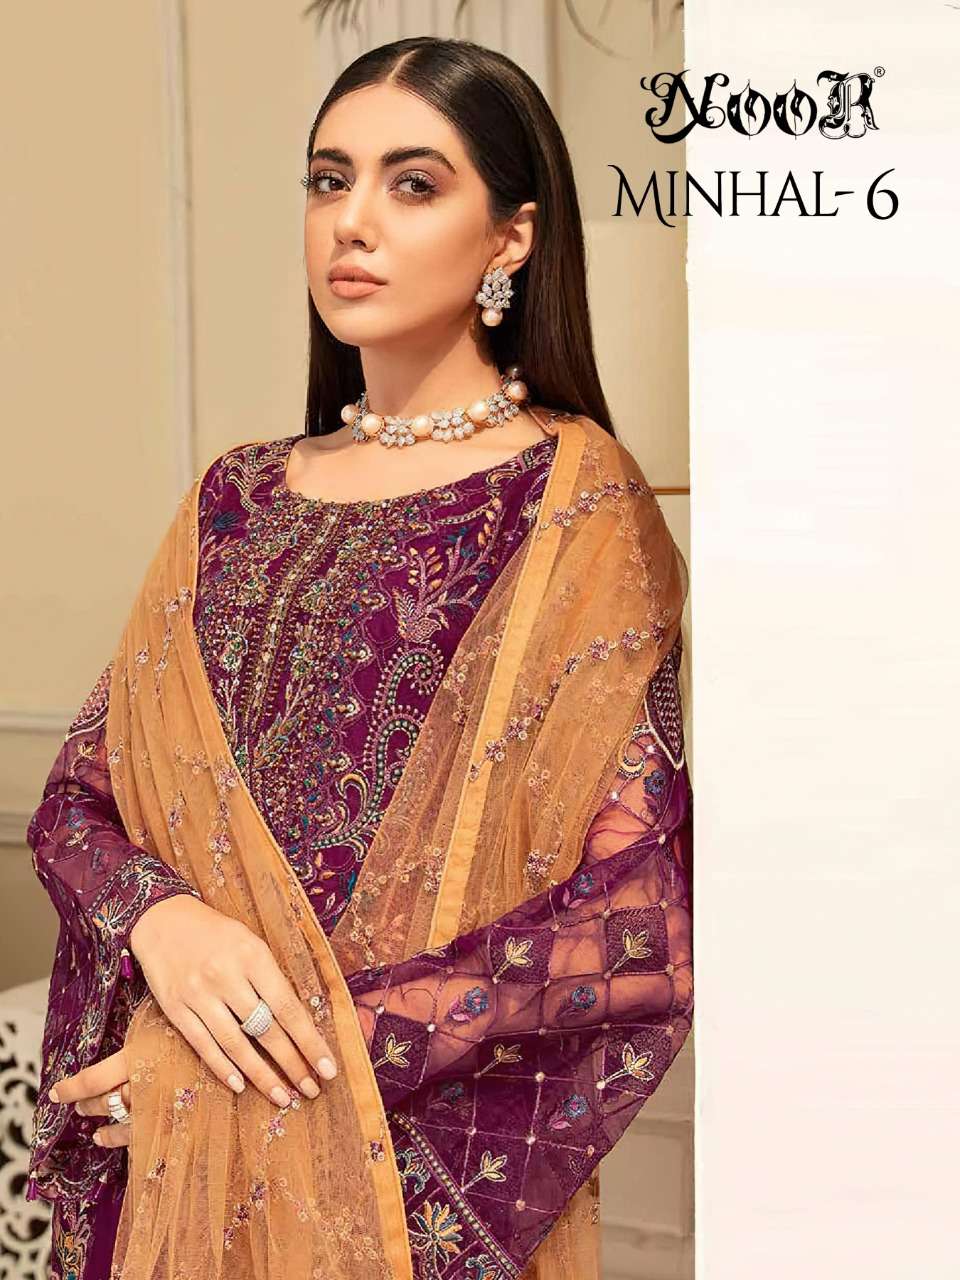 noor minhal vol 6 pakistani style georgette embroidery salwar kameez